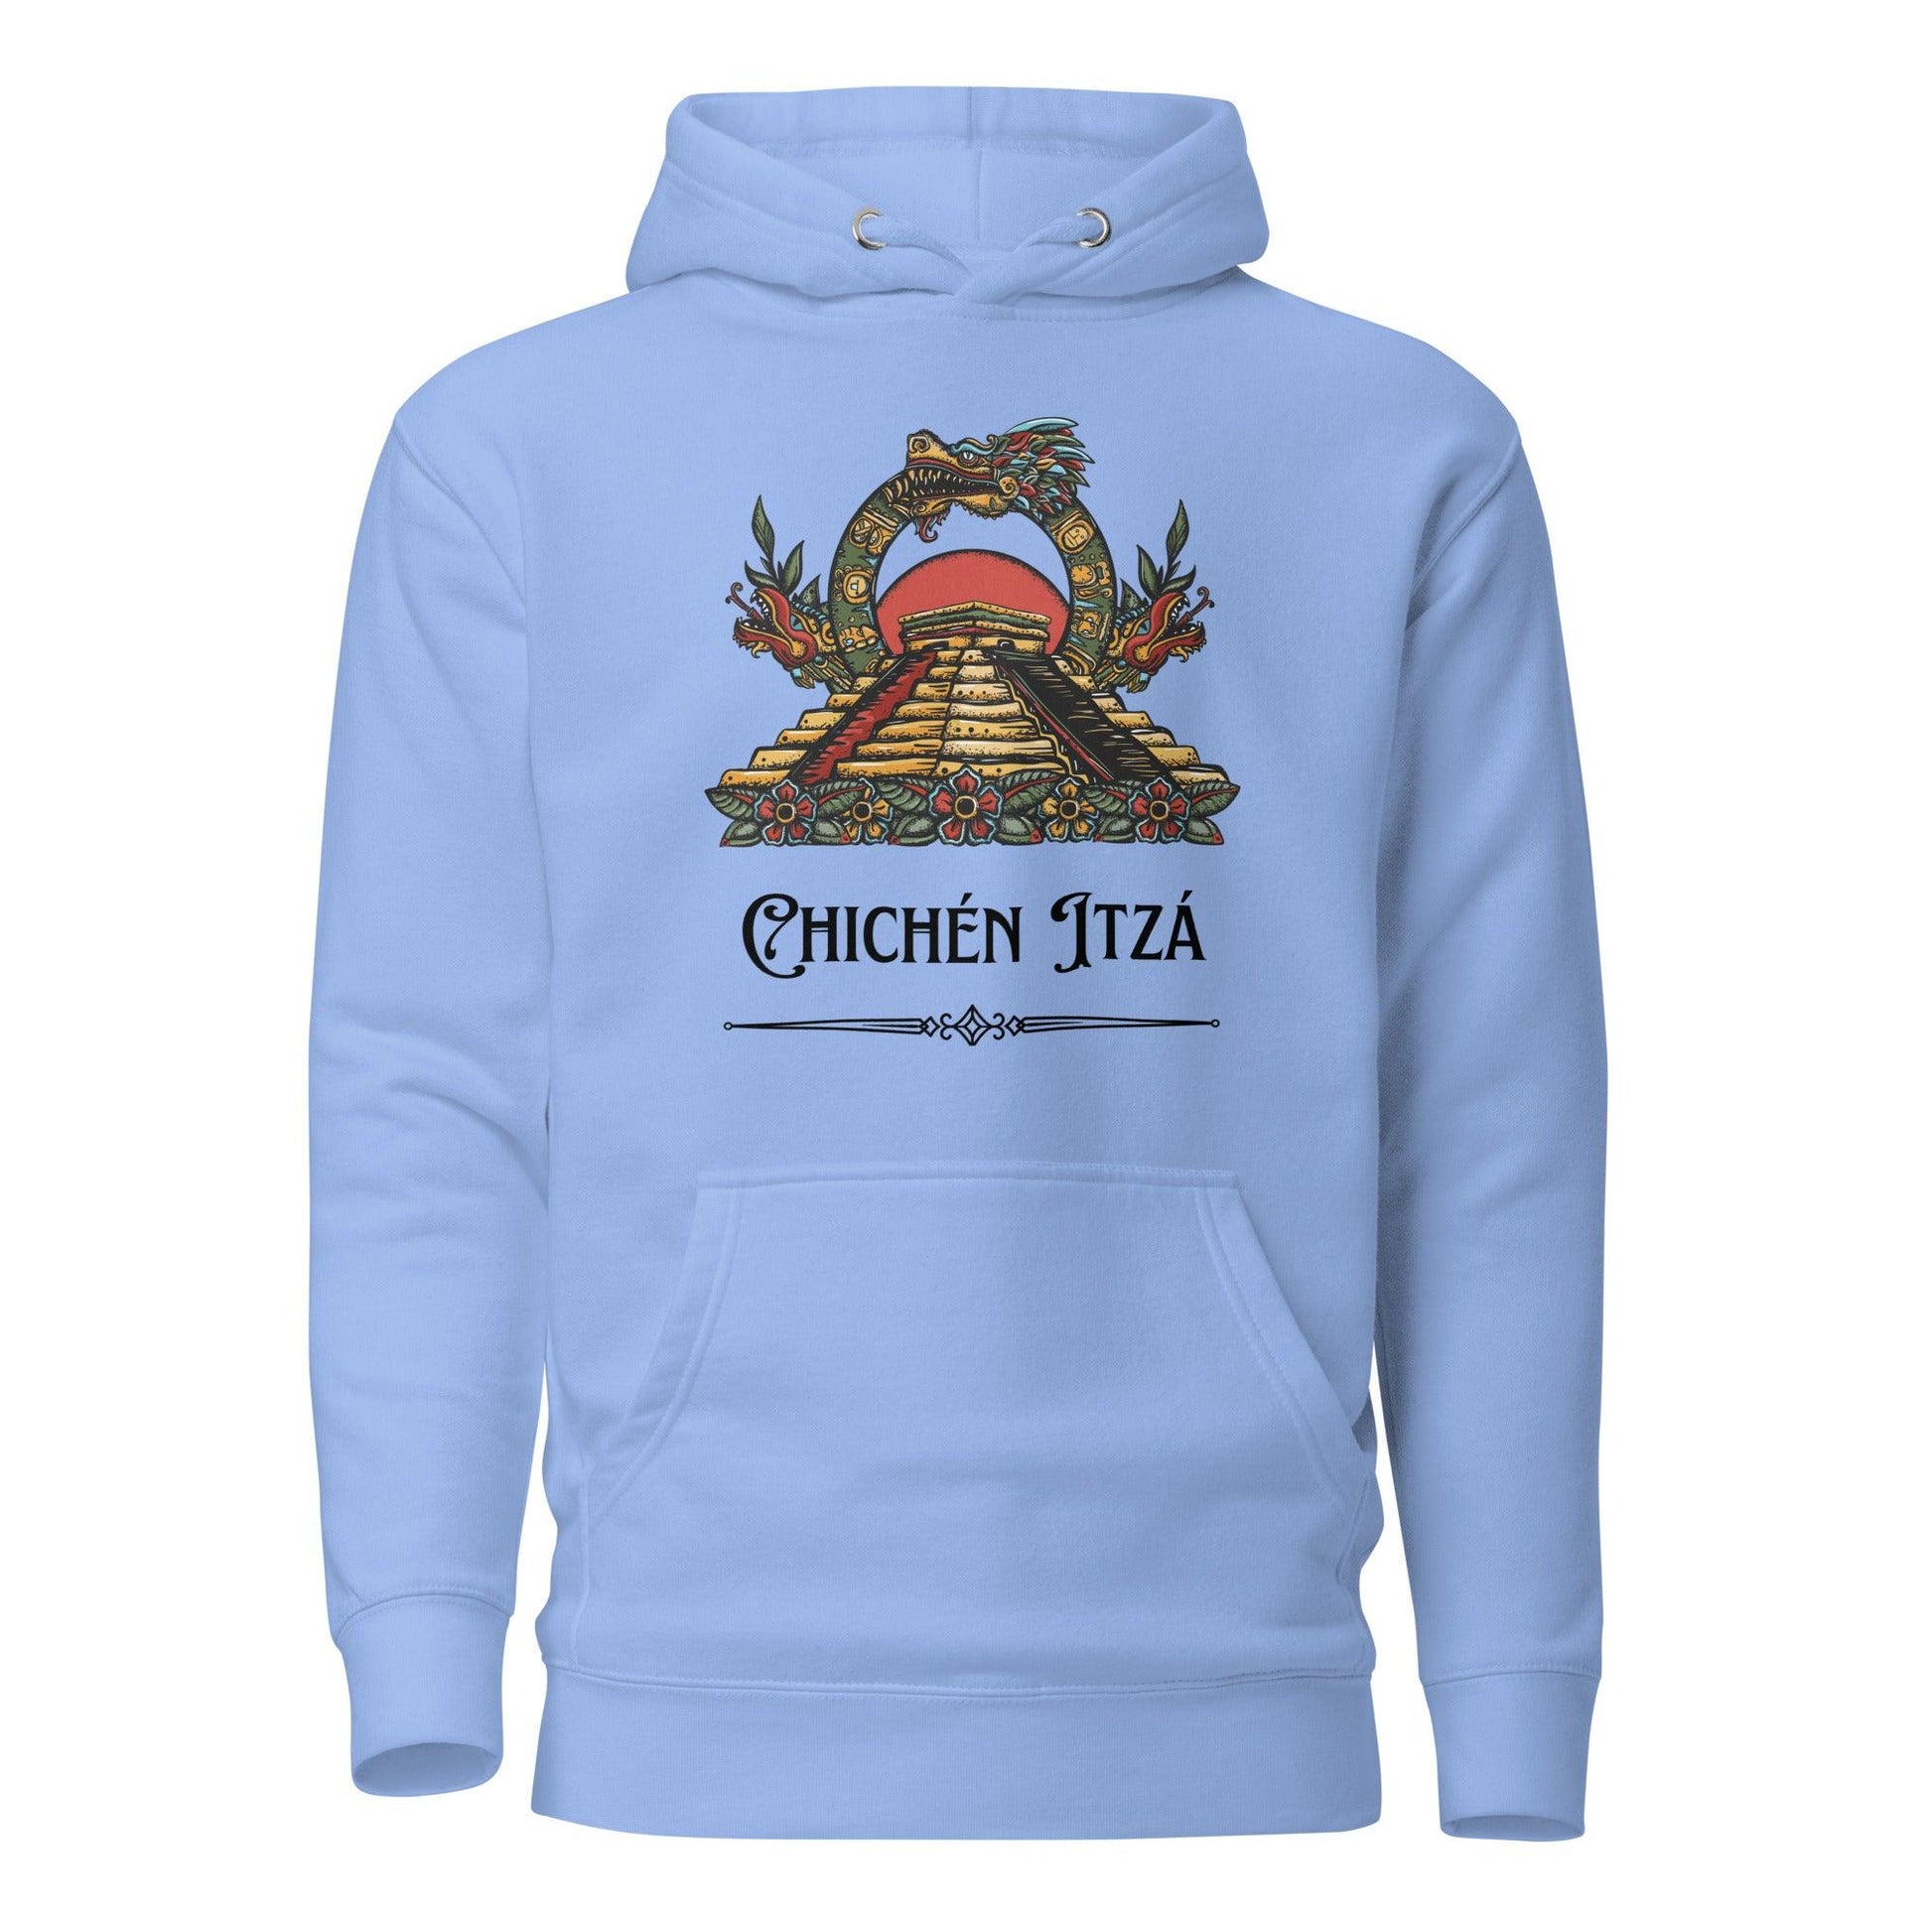 Chichén Itzá Hoodie - Thrive Attire